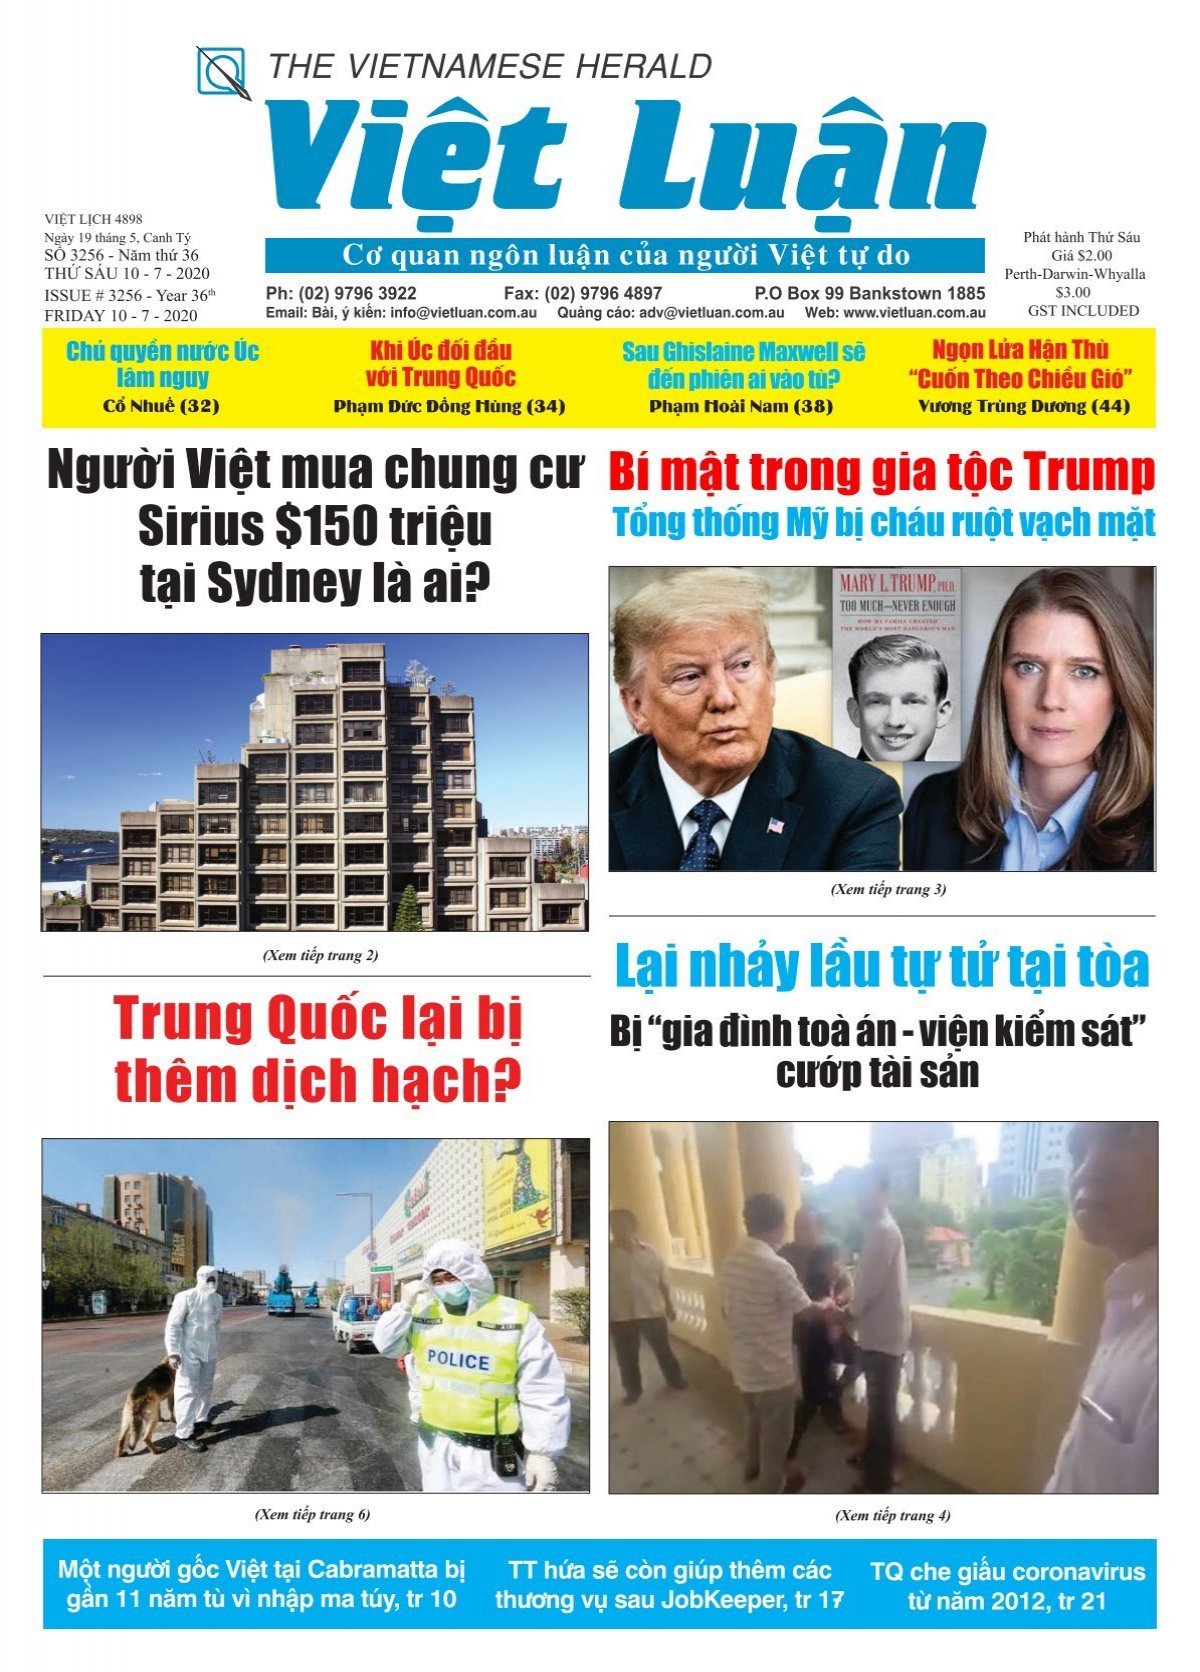 Tin tức Việt Nam được xem như một nguồn thông tin đáng tin cậy và chính xác. Hãy cùng theo dõi hình ảnh liên quan và cập nhật những tin tức mới nhất về đất nước và con người Việt Nam đang phát triển trên toàn cầu.